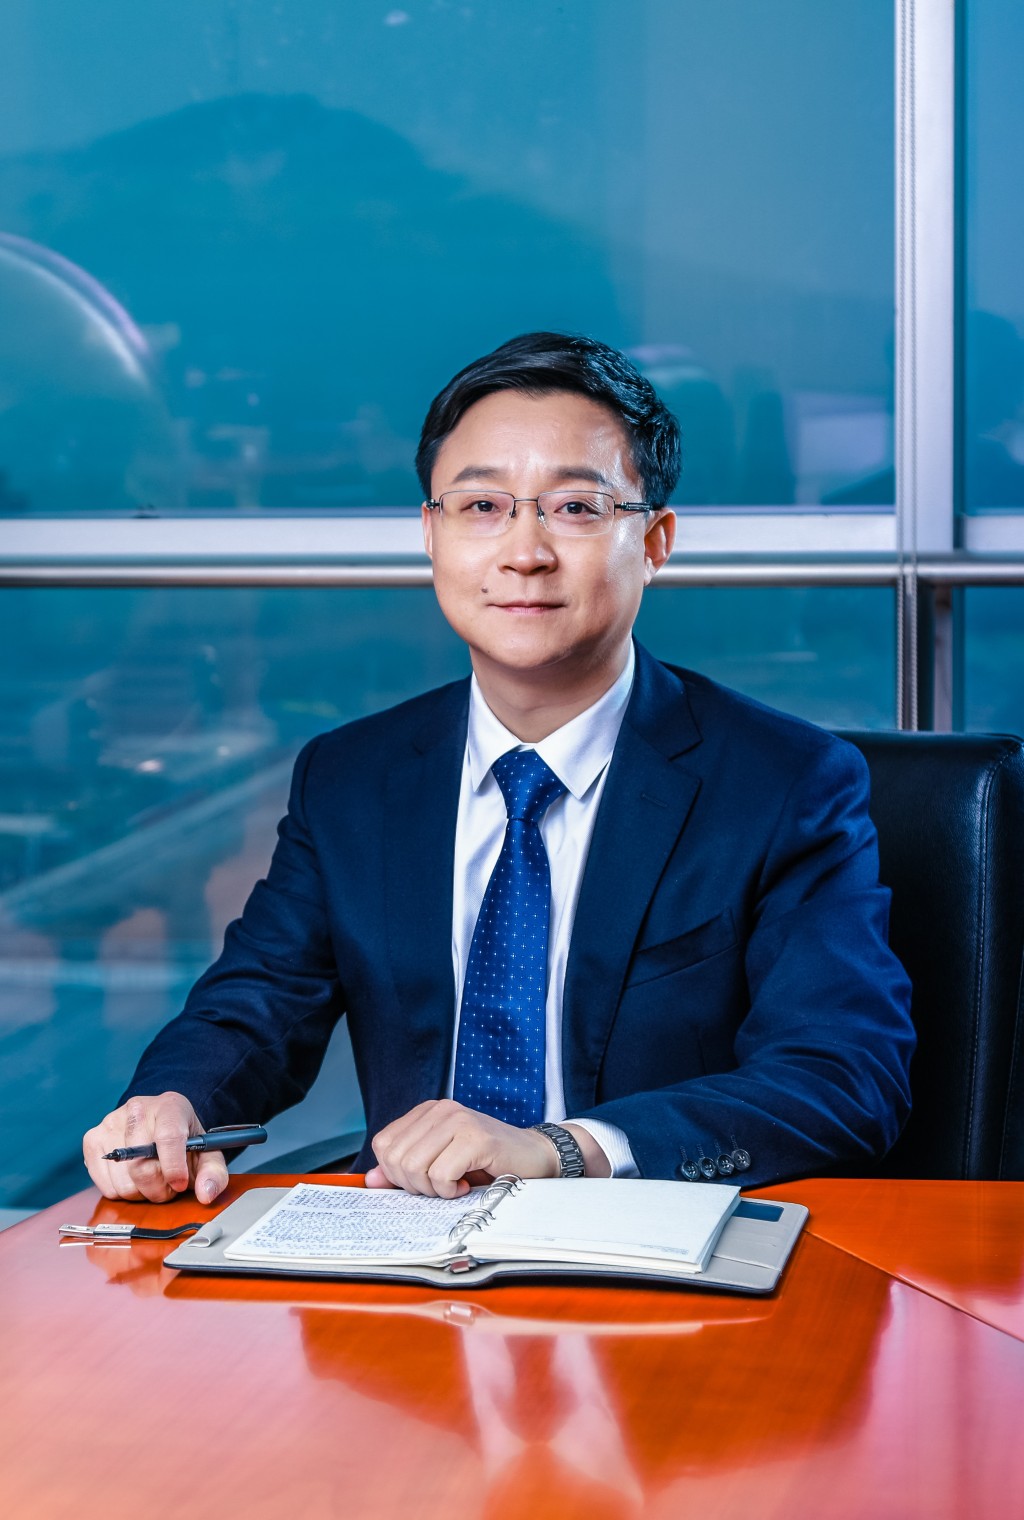 科大訊飛董事長劉慶峰則指出，期待民營科技企業在參與國家重大的科技戰略布局中有更多的機會與支持。